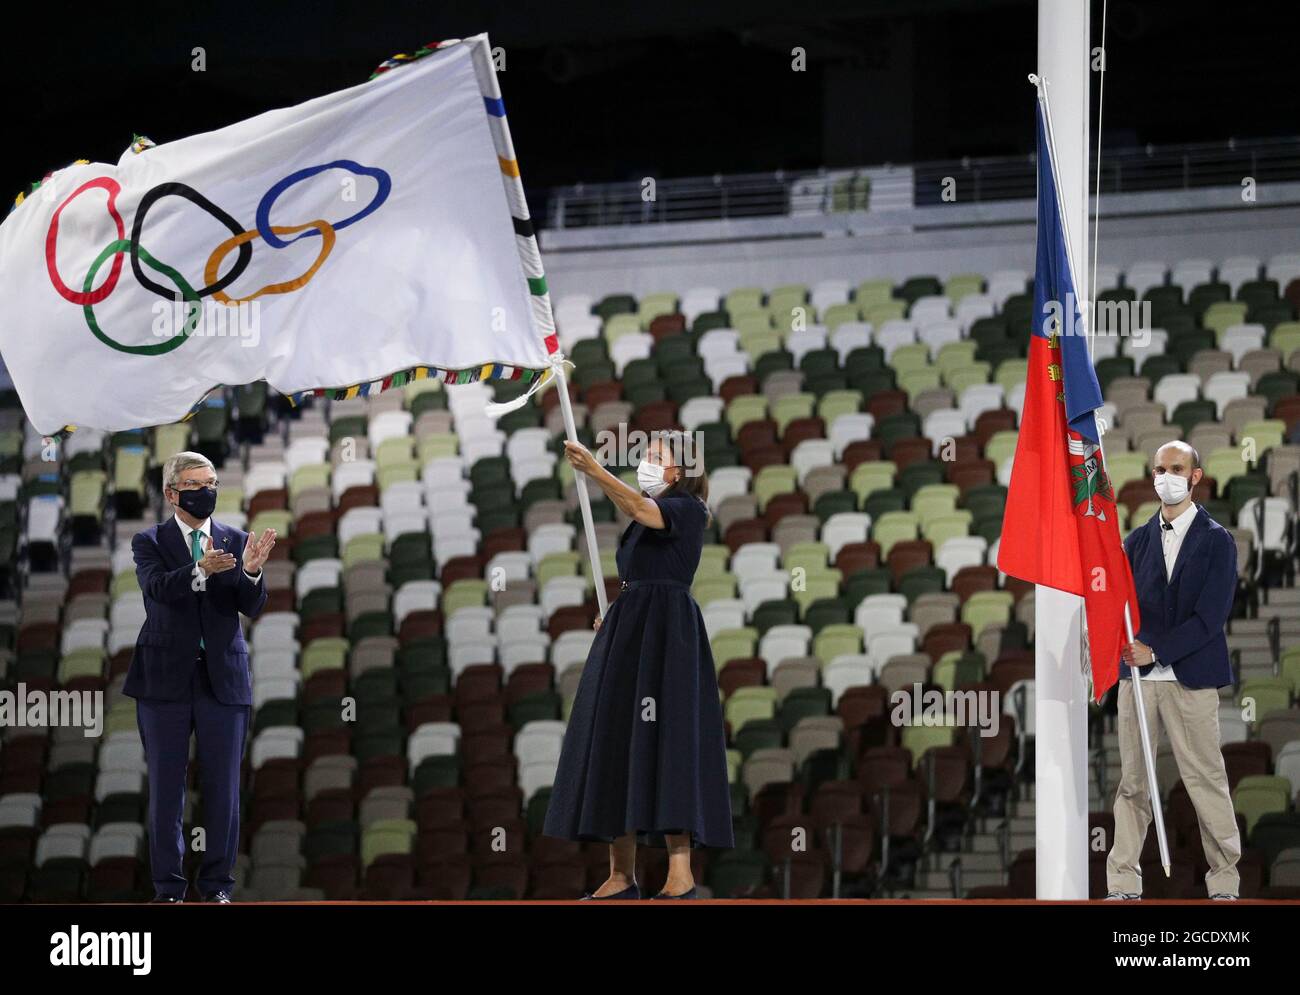 Tokyo, Japon. 8 août 2021. Anne Hidalgo, maire de Paris, fait la vague du drapeau olympique lors de la cérémonie de clôture des Jeux Olympiques de Tokyo 2020 à Tokyo, au Japon, le 8 août 2021. Crédit : Li Ming/Xinhua/Alay Live News Banque D'Images